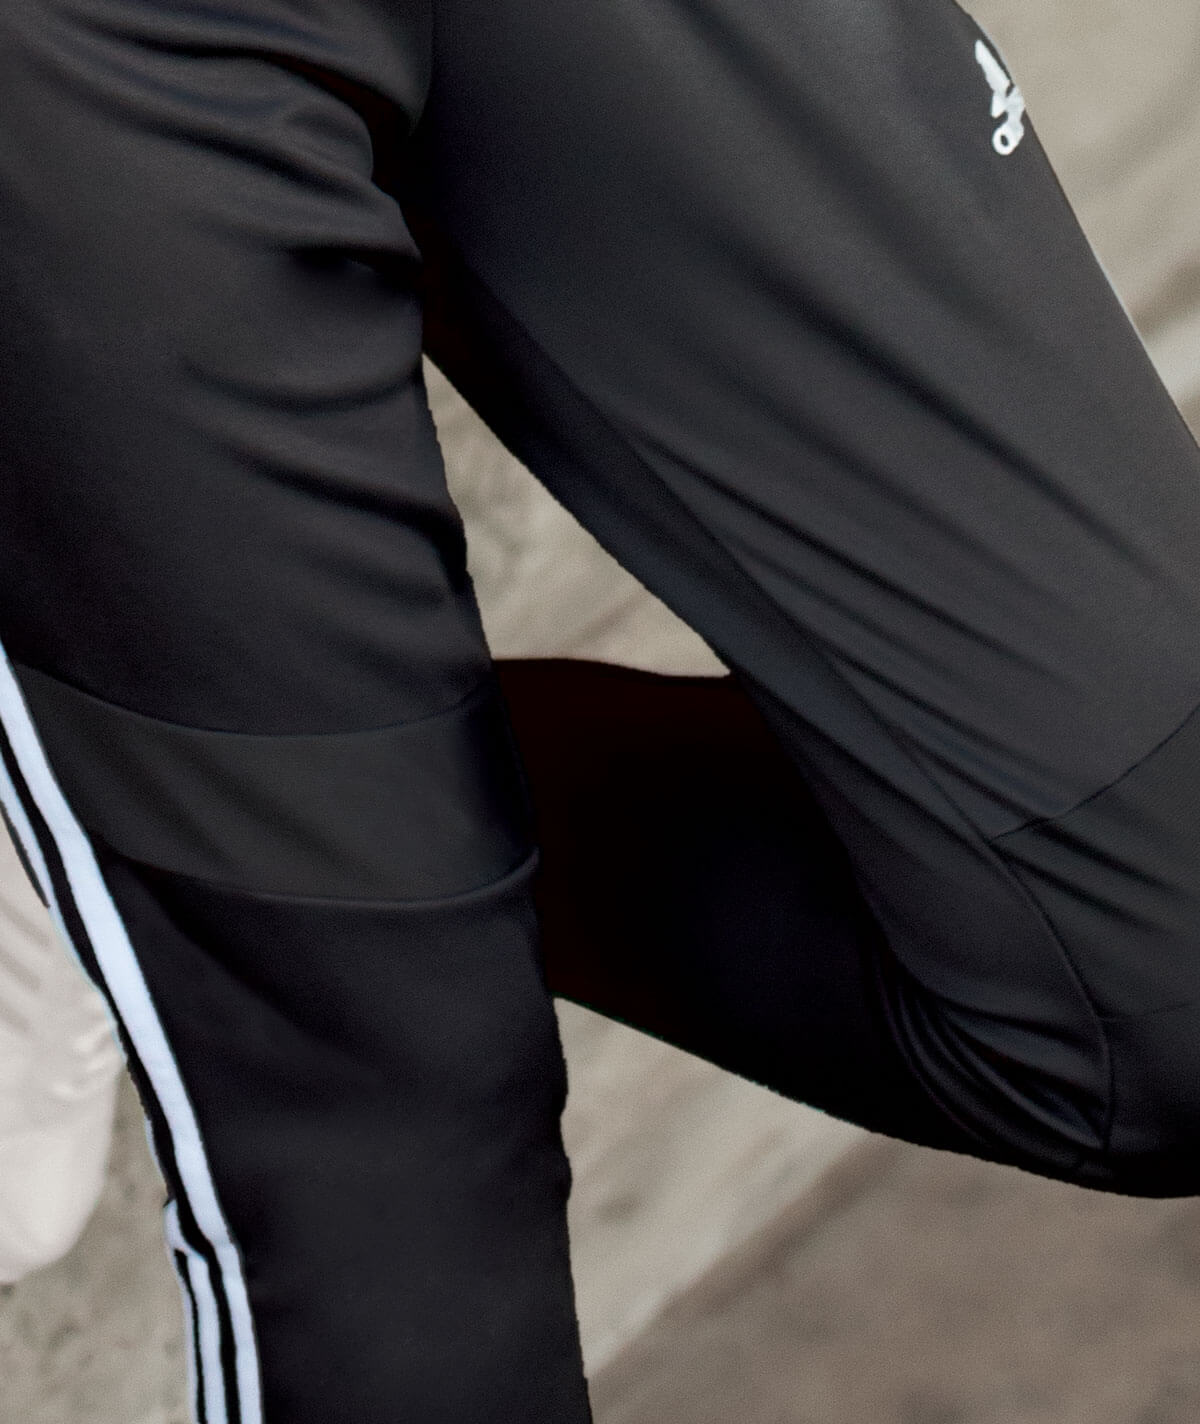 Doorweekt ik ga akkoord met reinigen Adidas Tiro 19 Training Pant - Cheer Warmups | Omni Cheer